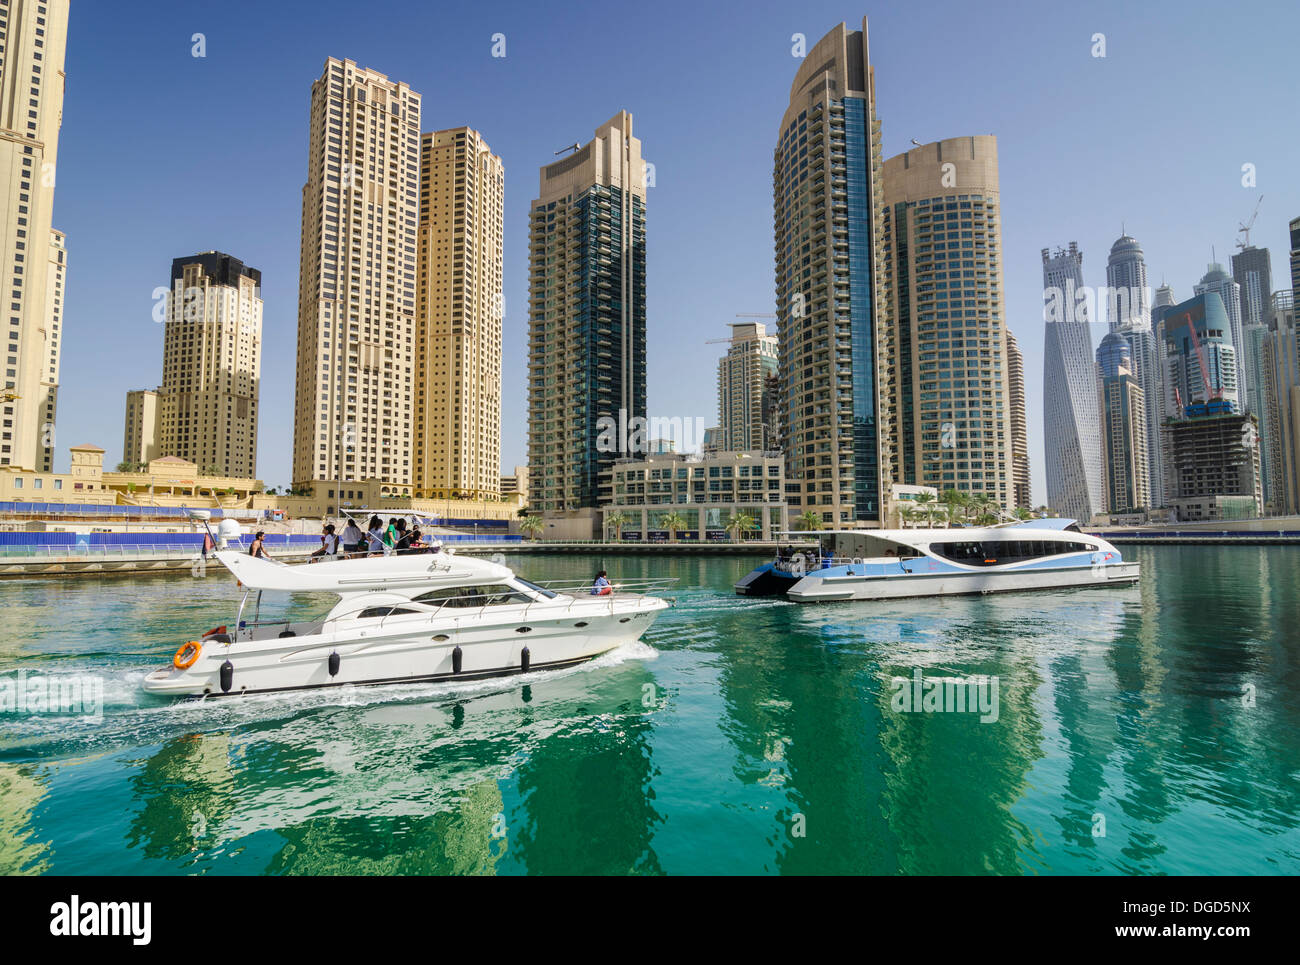 The RTA Dubai Ferry and a private boat in Dubai Marina, Dubai, UAE Stock Photo